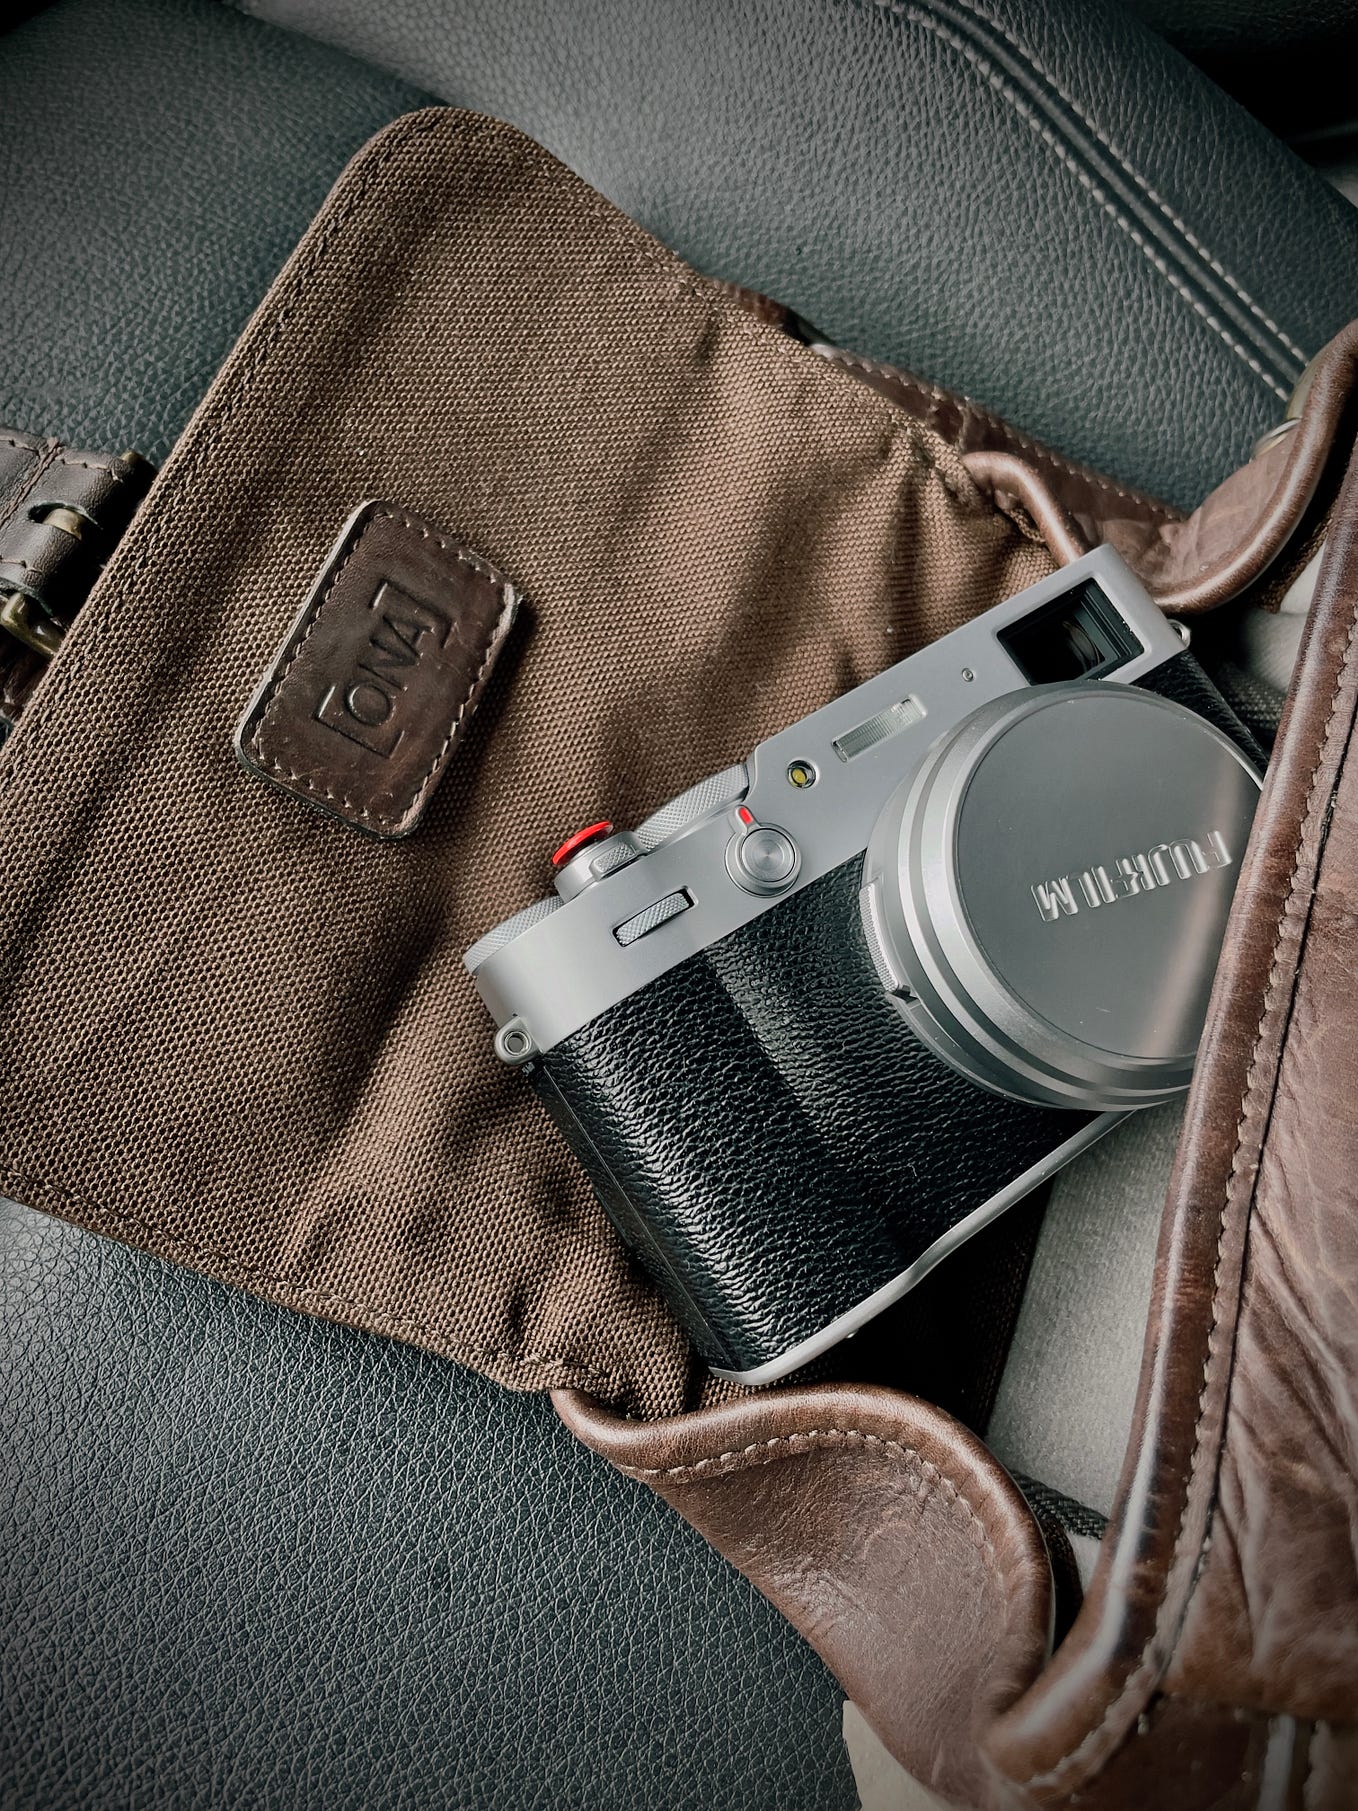 Tilt-shift photography: Learn how to create mini photos., by SmugMug